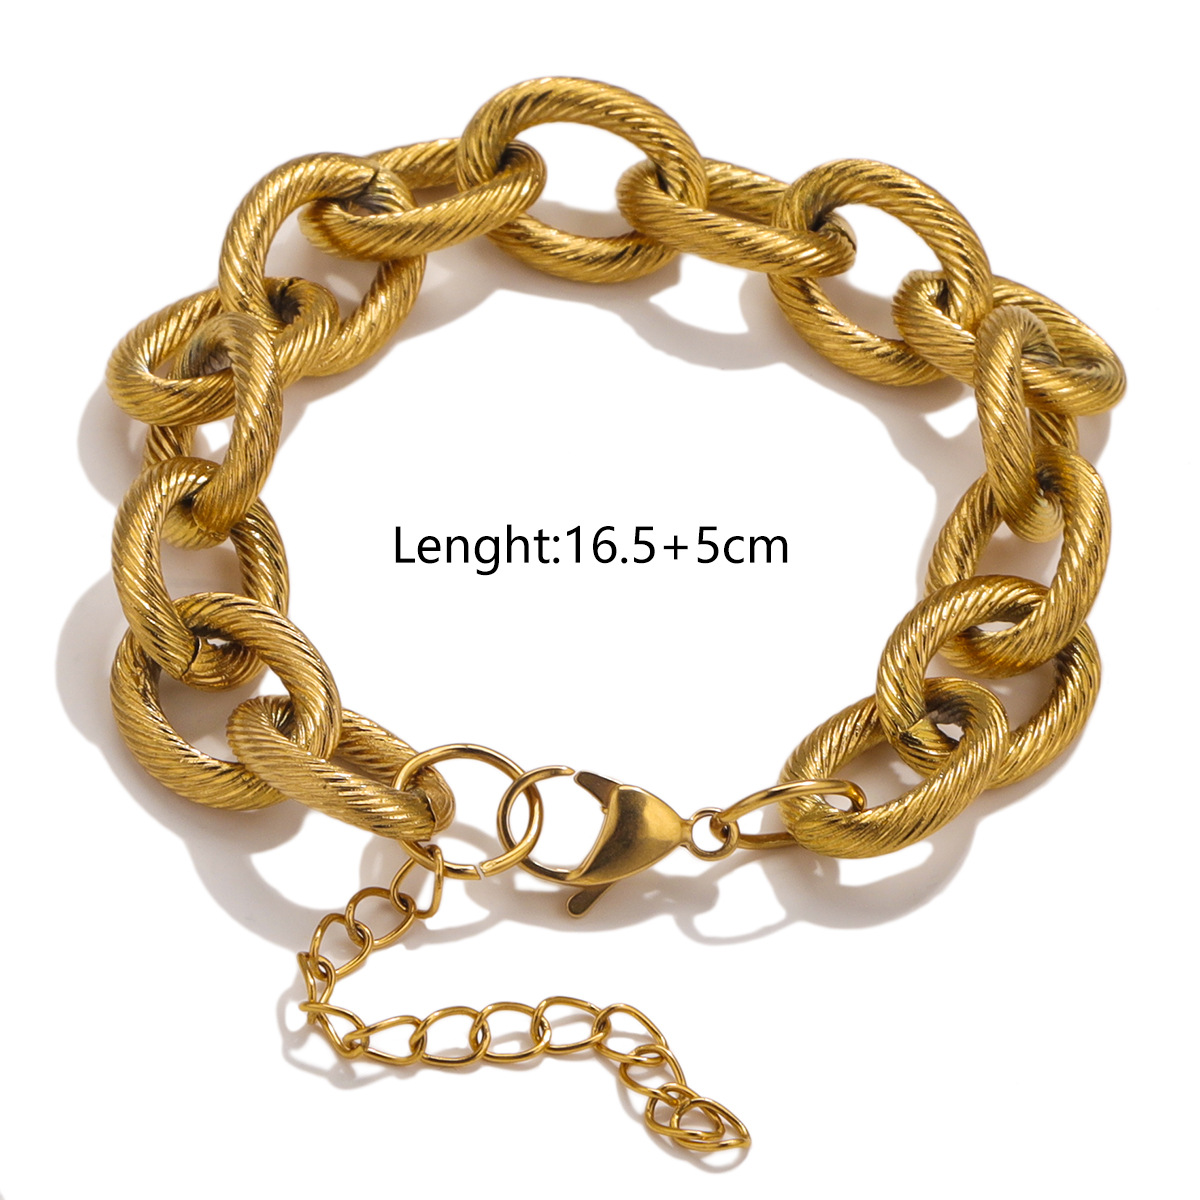 Gold bracelet - 16cm tail chain 5cm